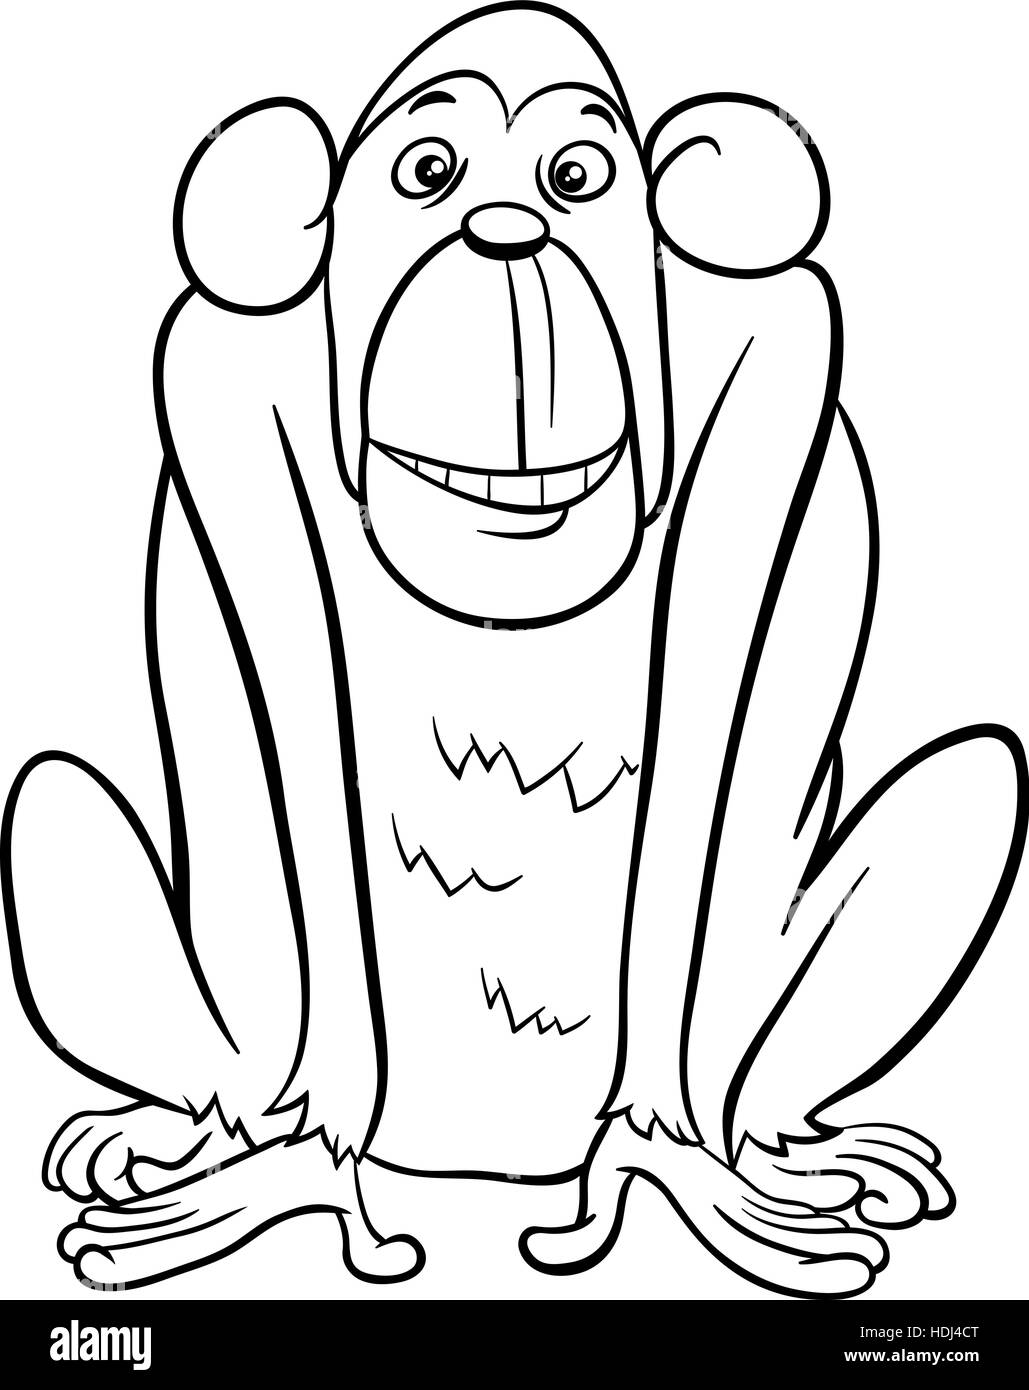 Schwarz / Weiß Cartoon Illustration von Affen oder Affen Tier Charakter Malvorlagen Stock Vektor